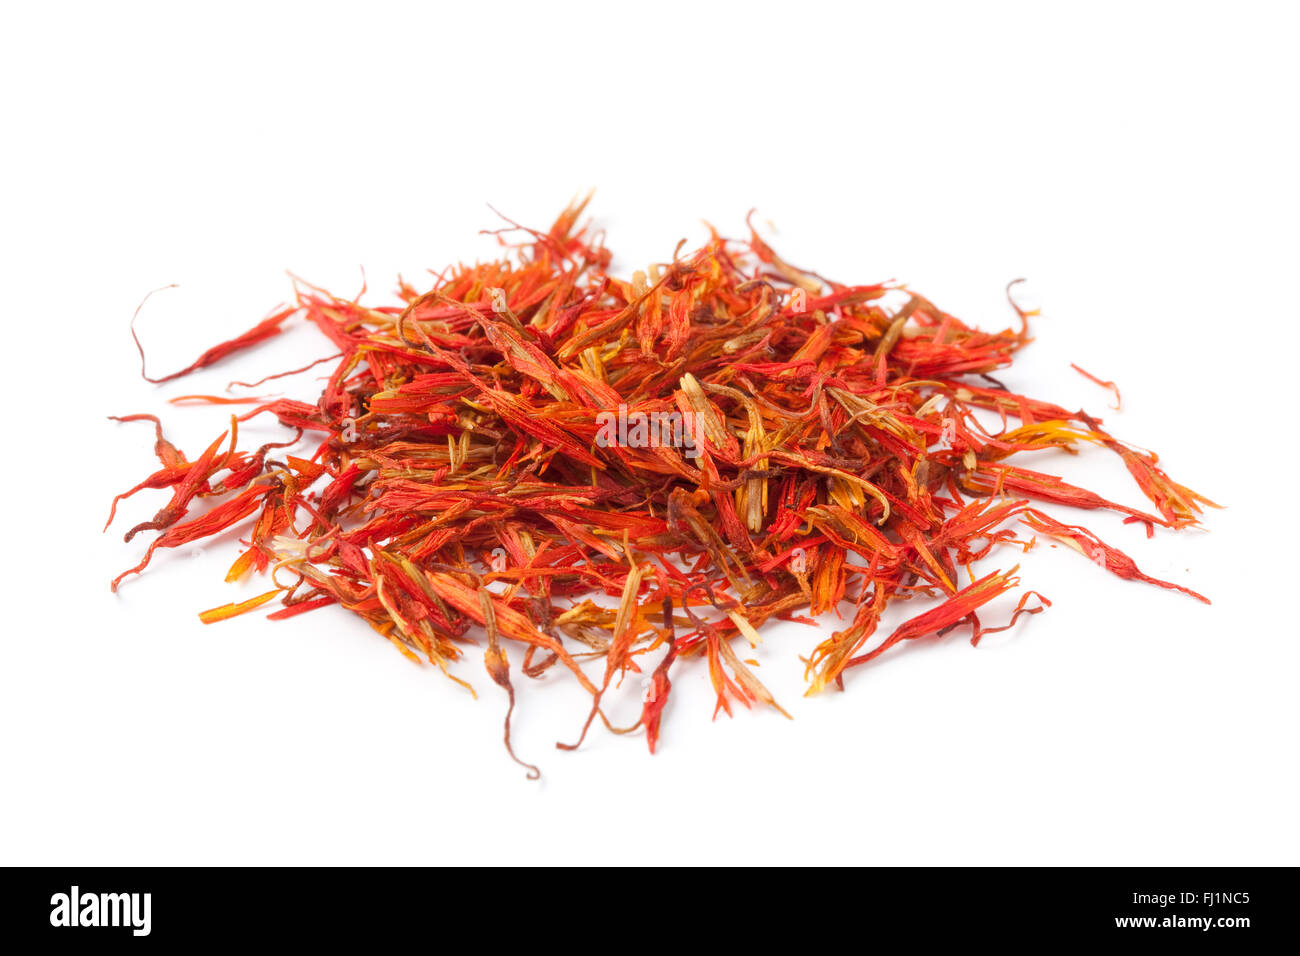 Pile of Saffron on white background Stock Photo